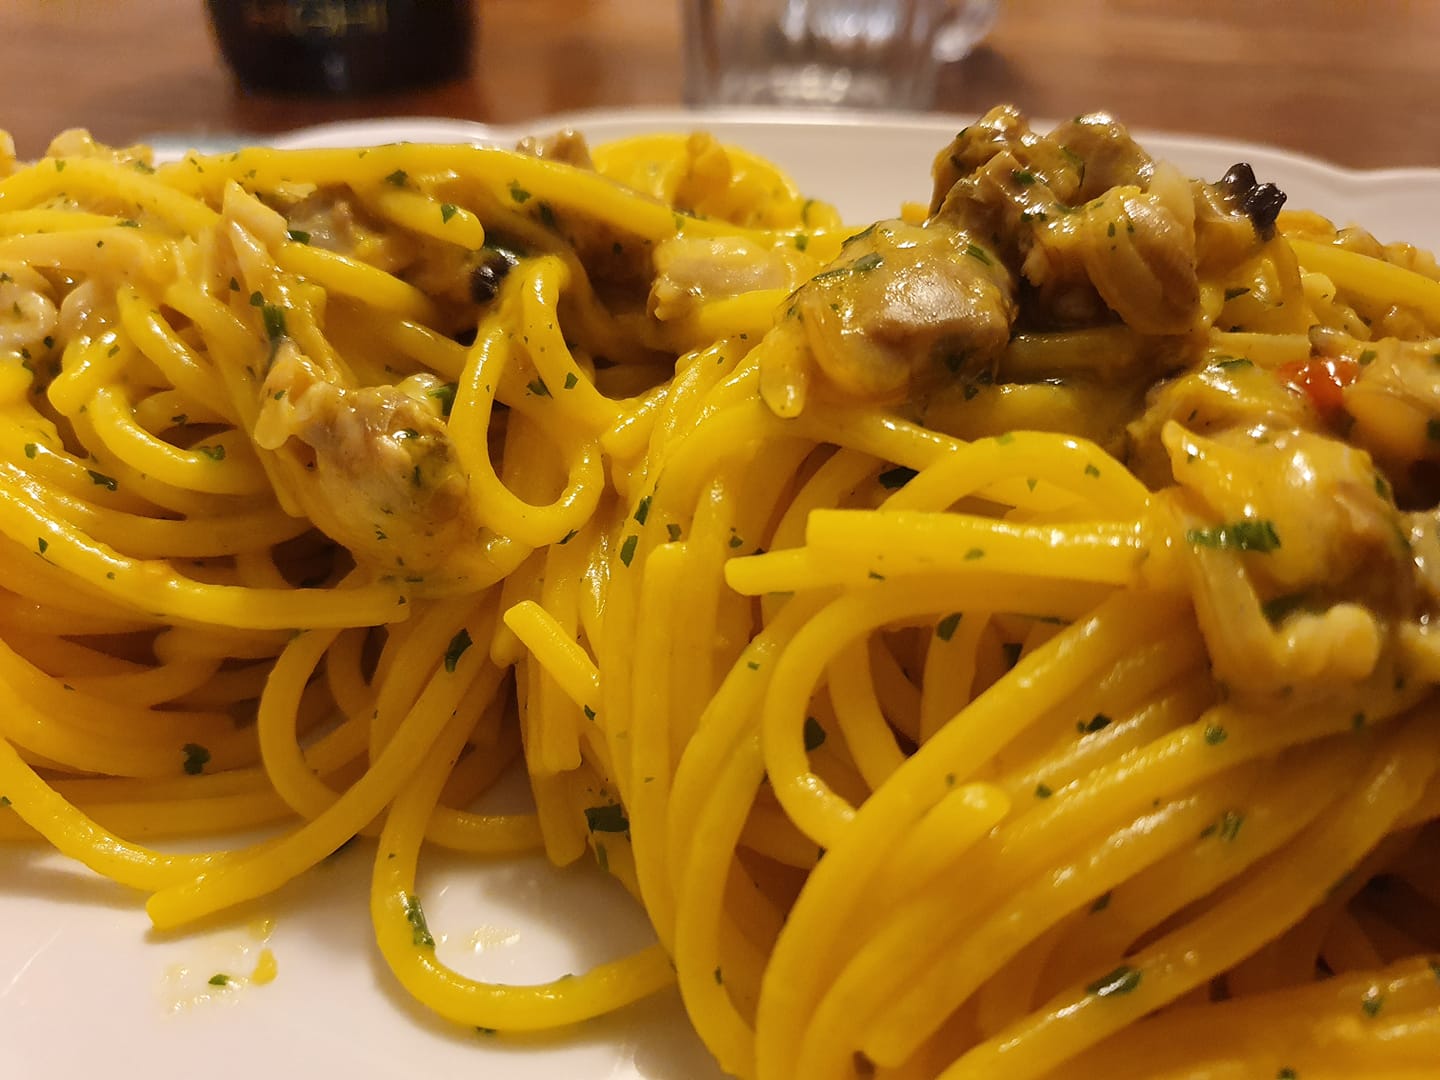 spaghetti-alla-carbonara-di-vongole,-piu-golosi-e-cremosi-dei-classici.-l’alternativa-veloce-per-la-cena-di-natale